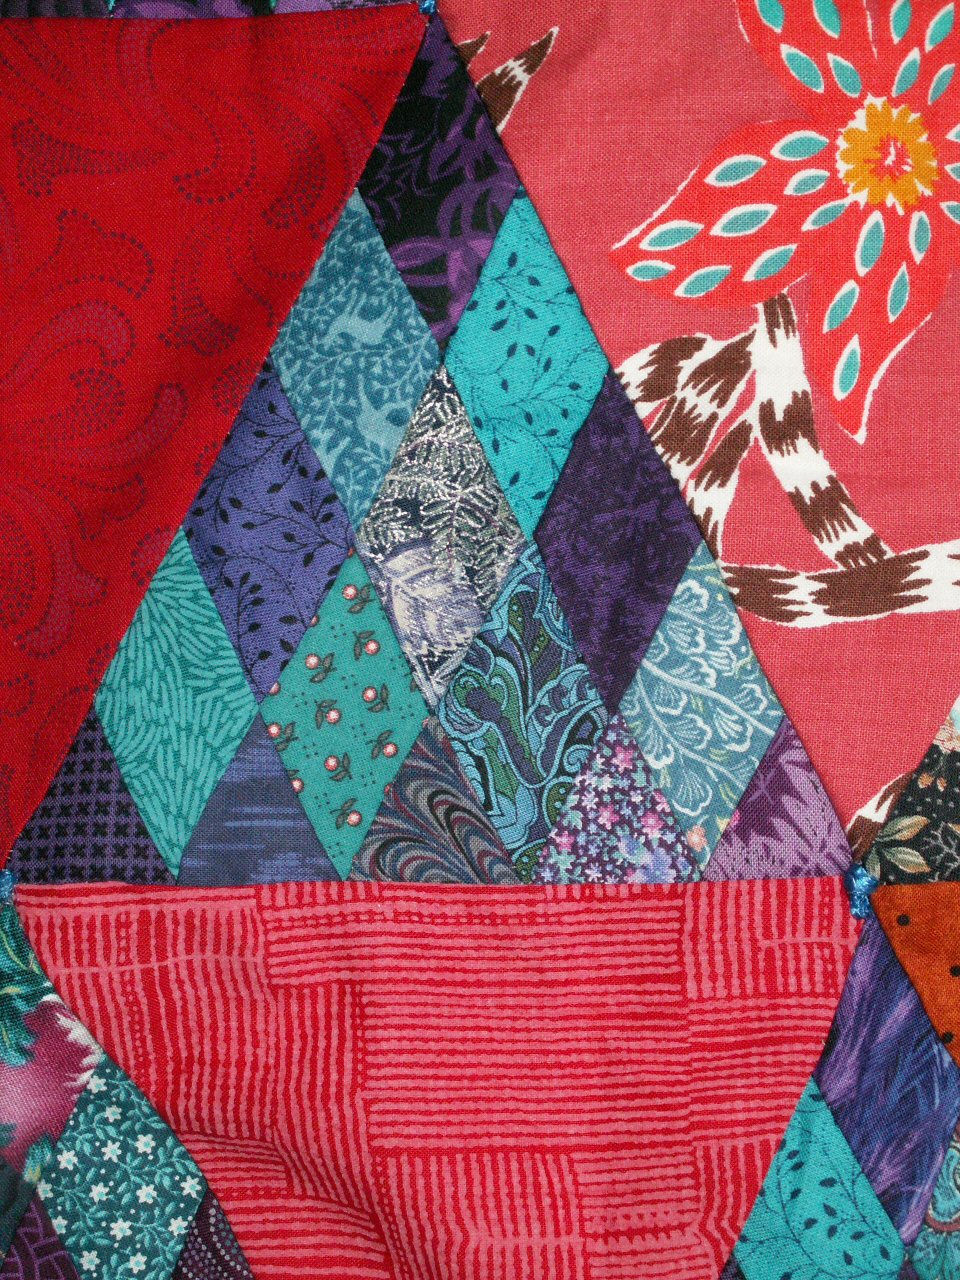 Confiseriesdet red jacqueline fischer art textile